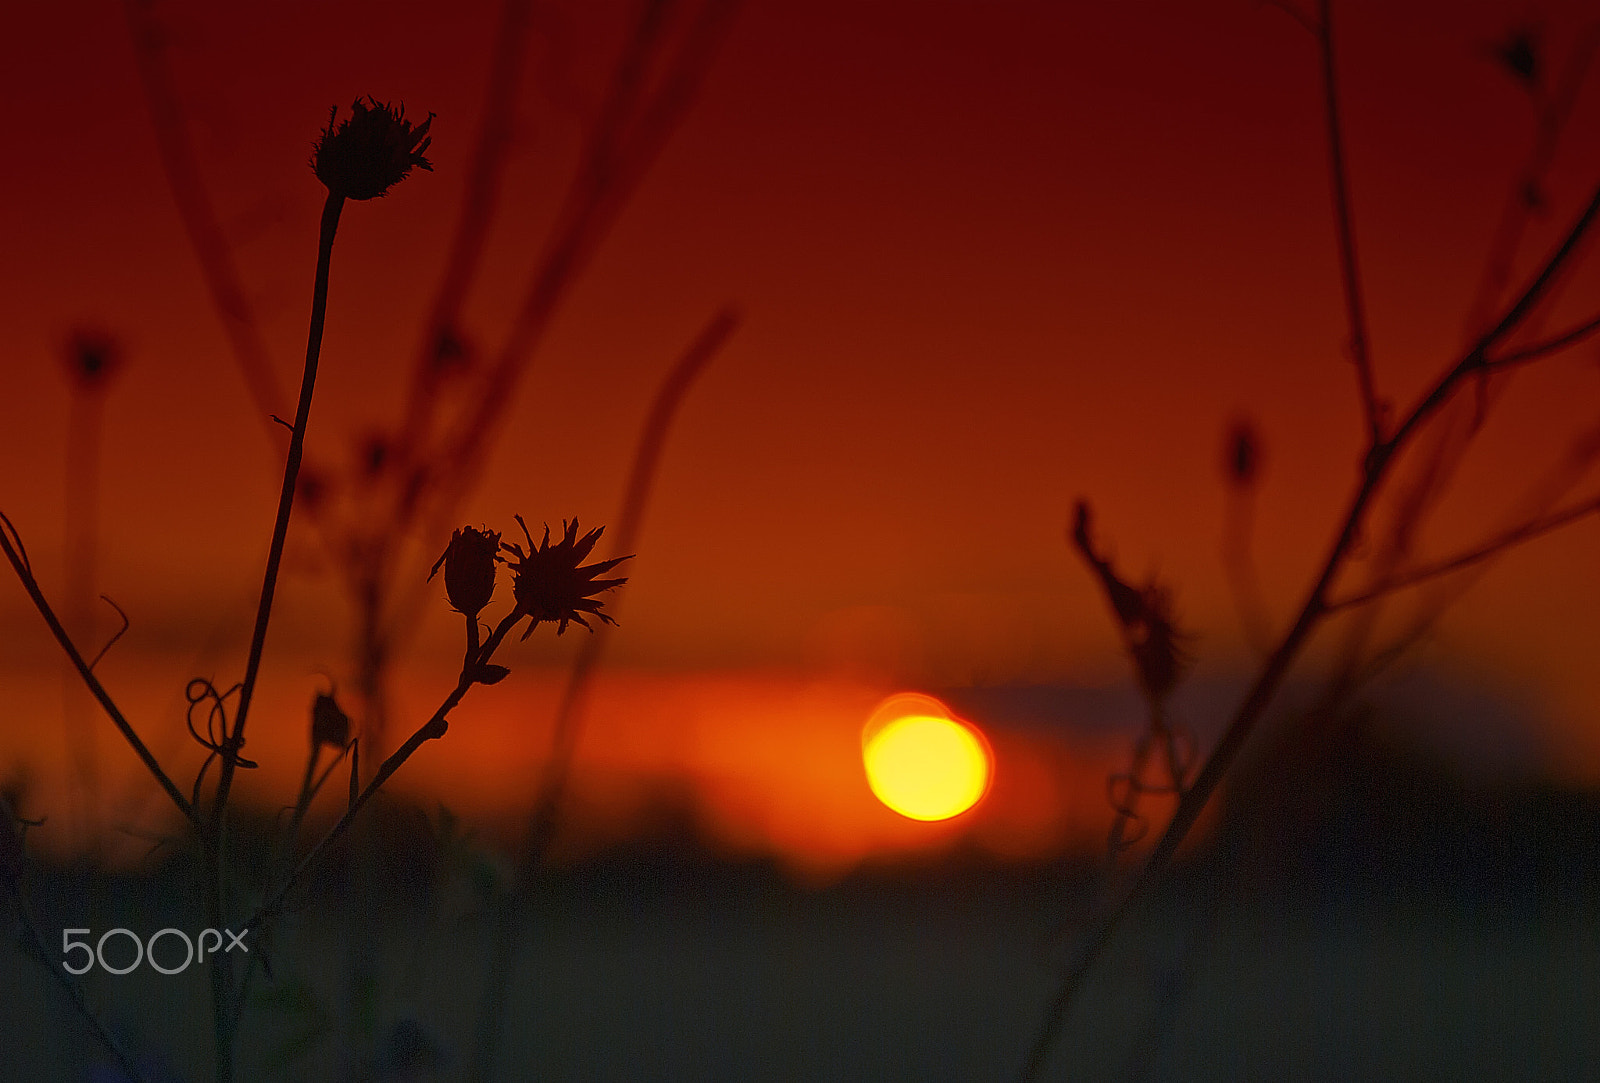 Nikon D80 + AF Zoom-Nikkor 28-80mm f/3.3-5.6G sample photo. Red sunset photography